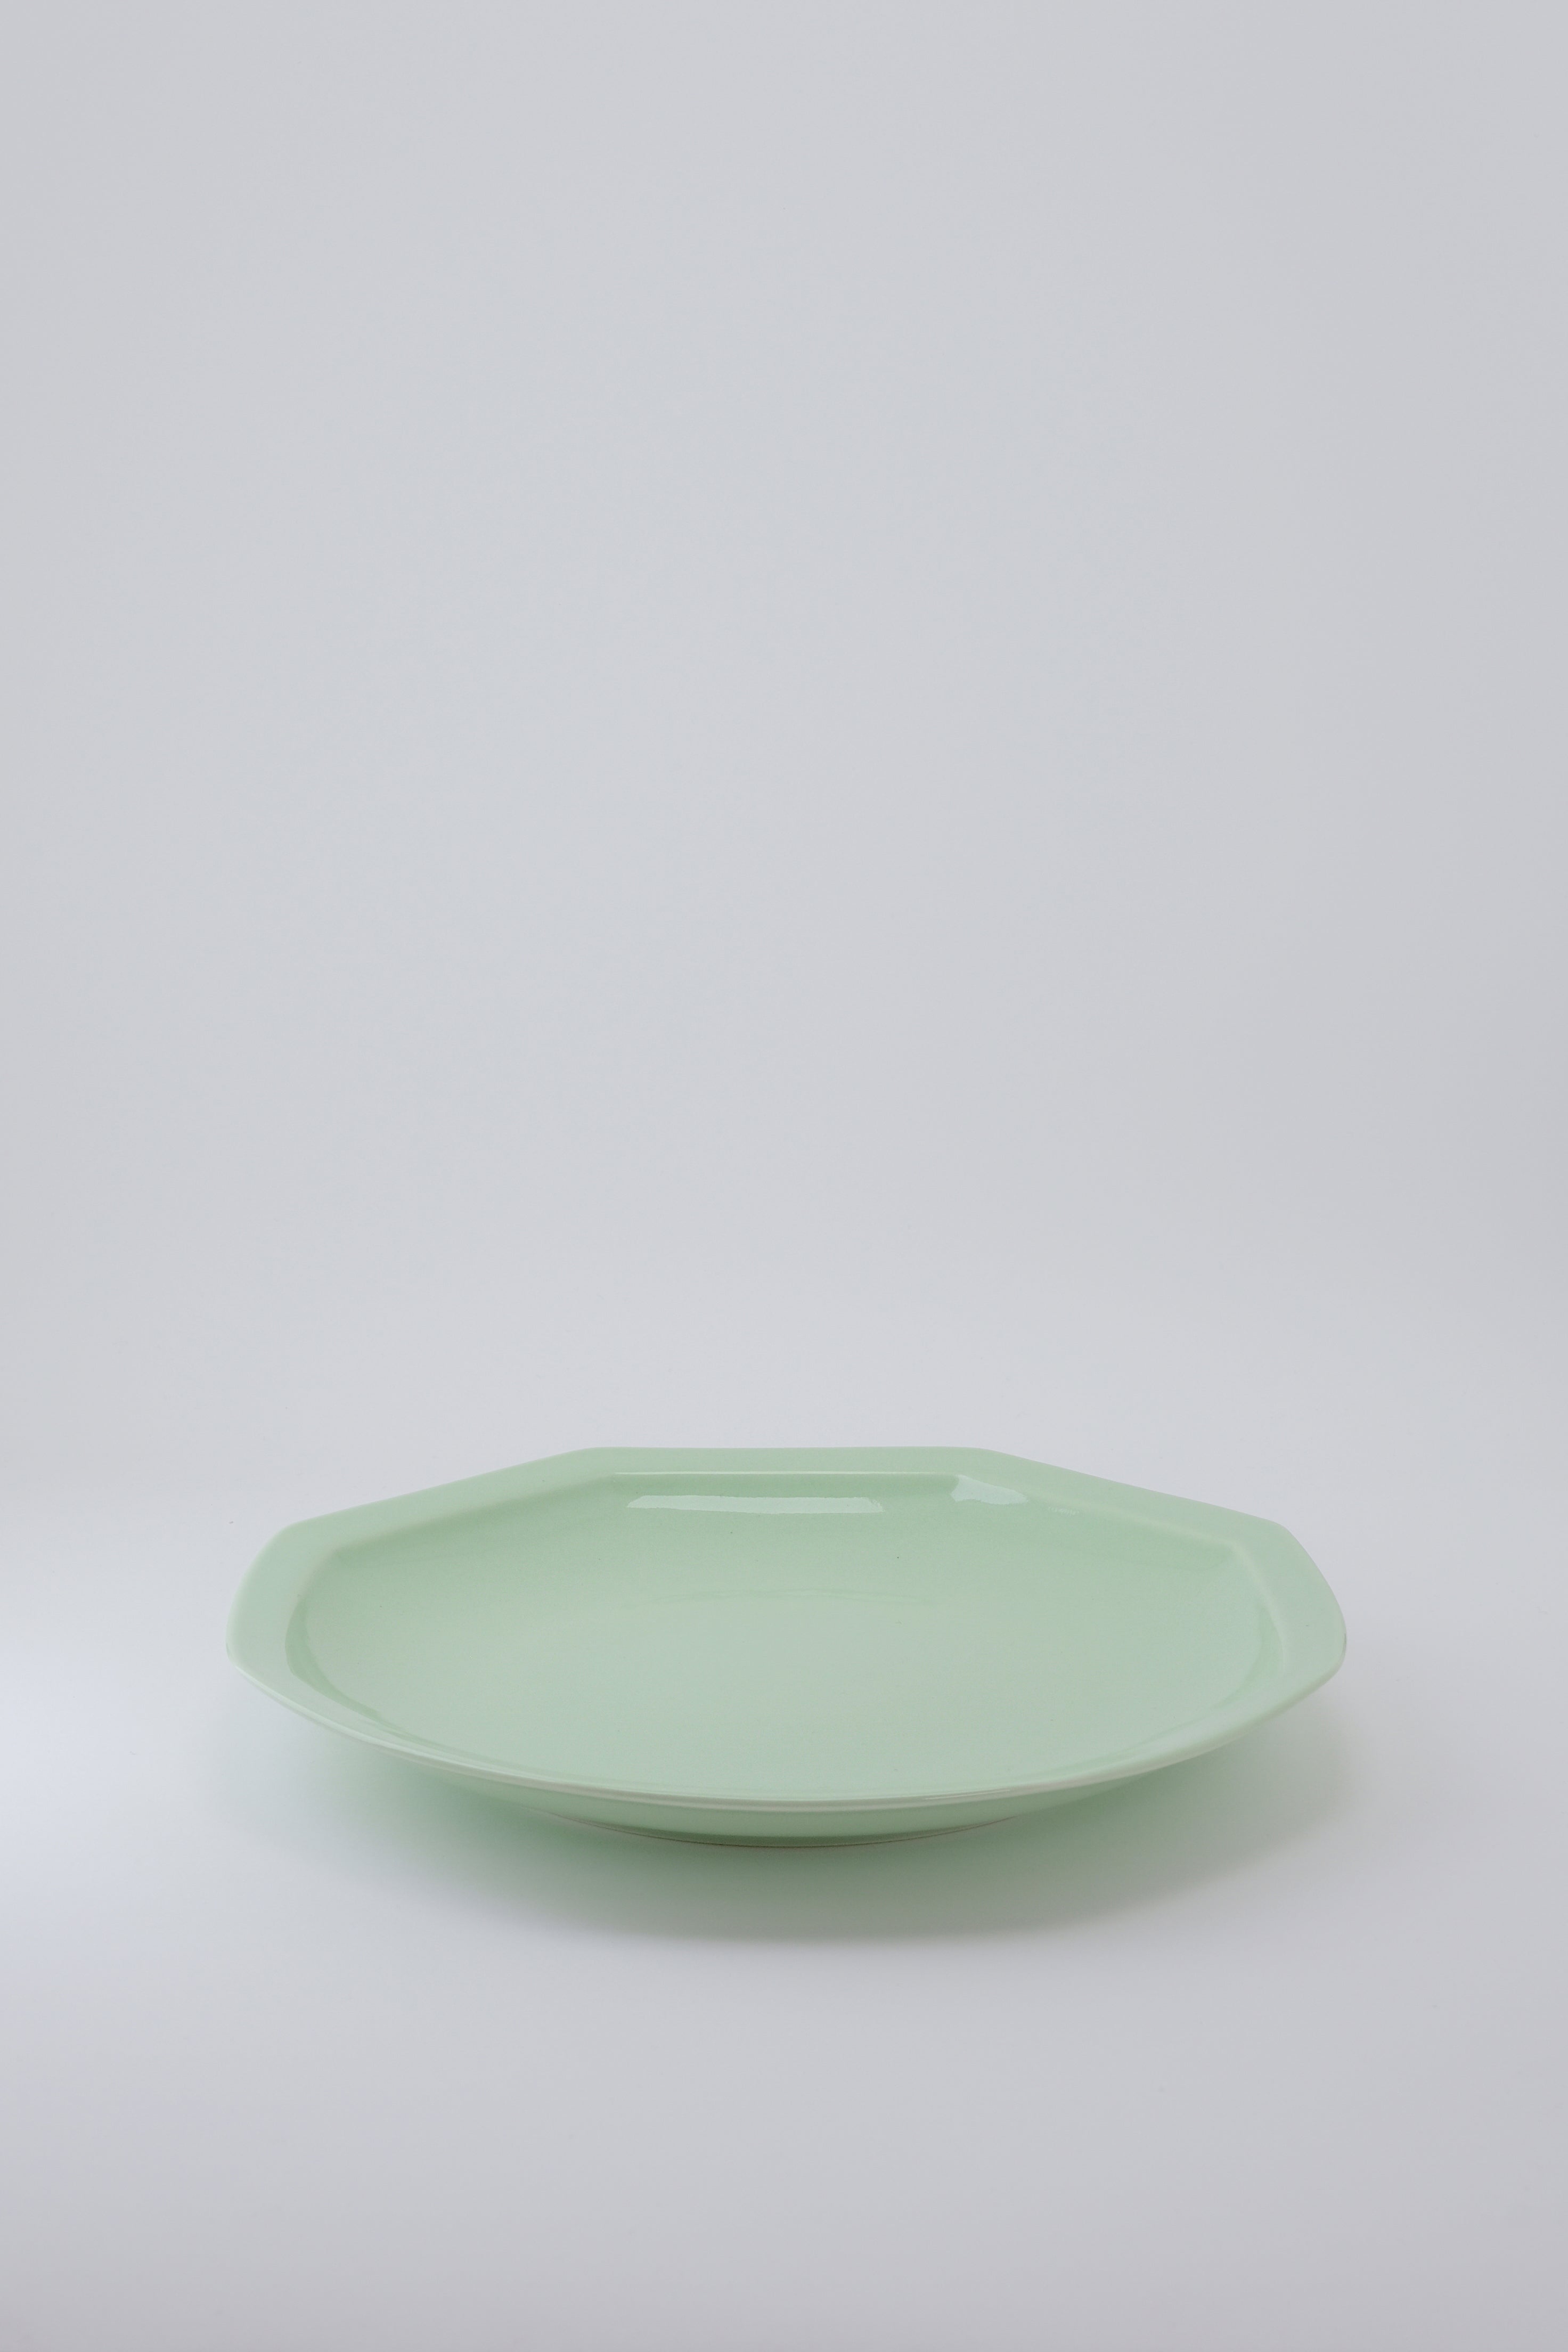 Octangle dinner plate mint-Ogre-[interior]-[design]-KIOSK48TH